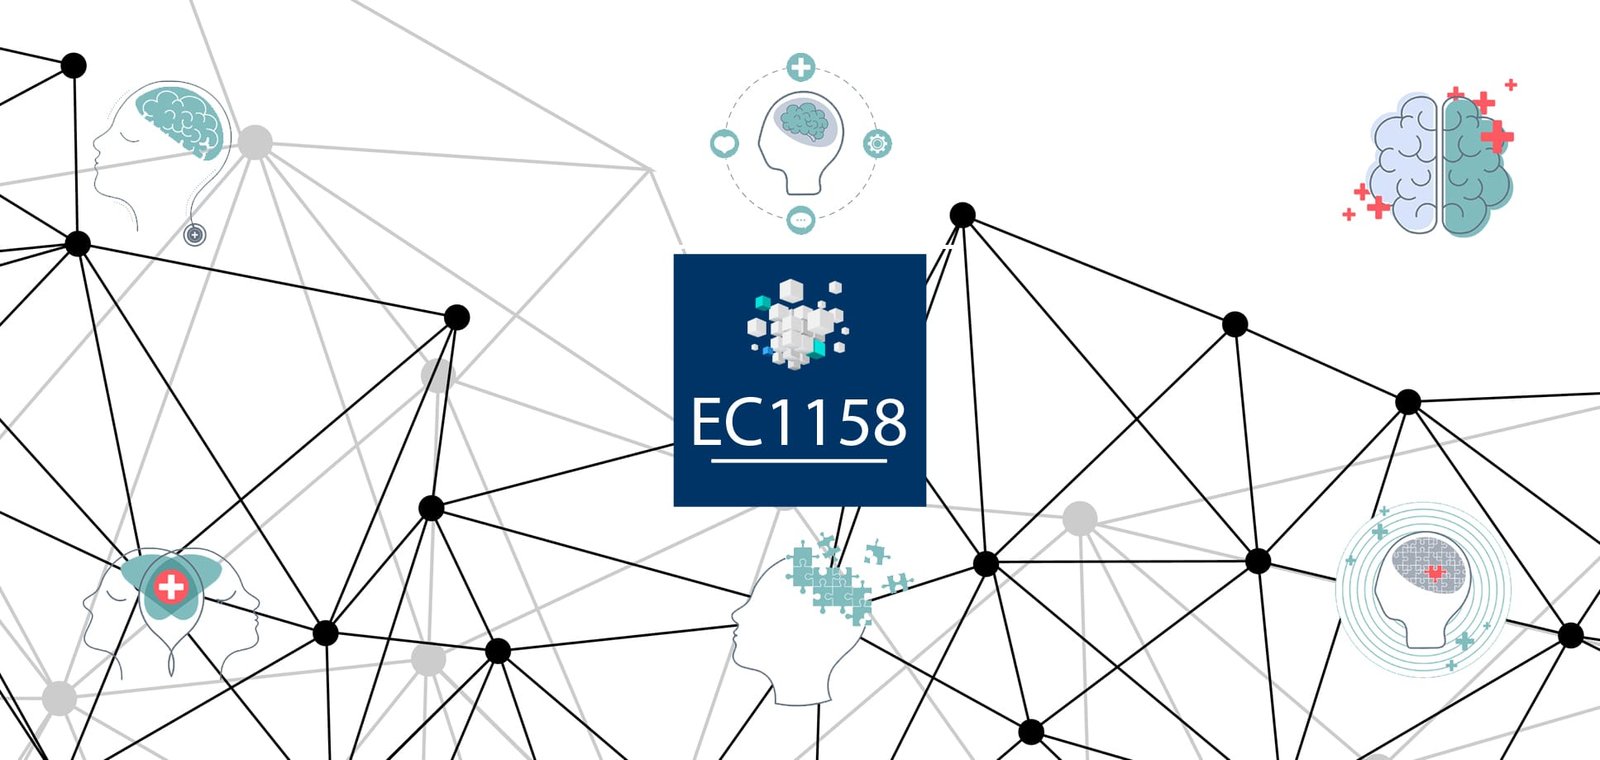 EC 1158 Implementación de habilidades socio-emocionales y metodologías para desarrollarlas